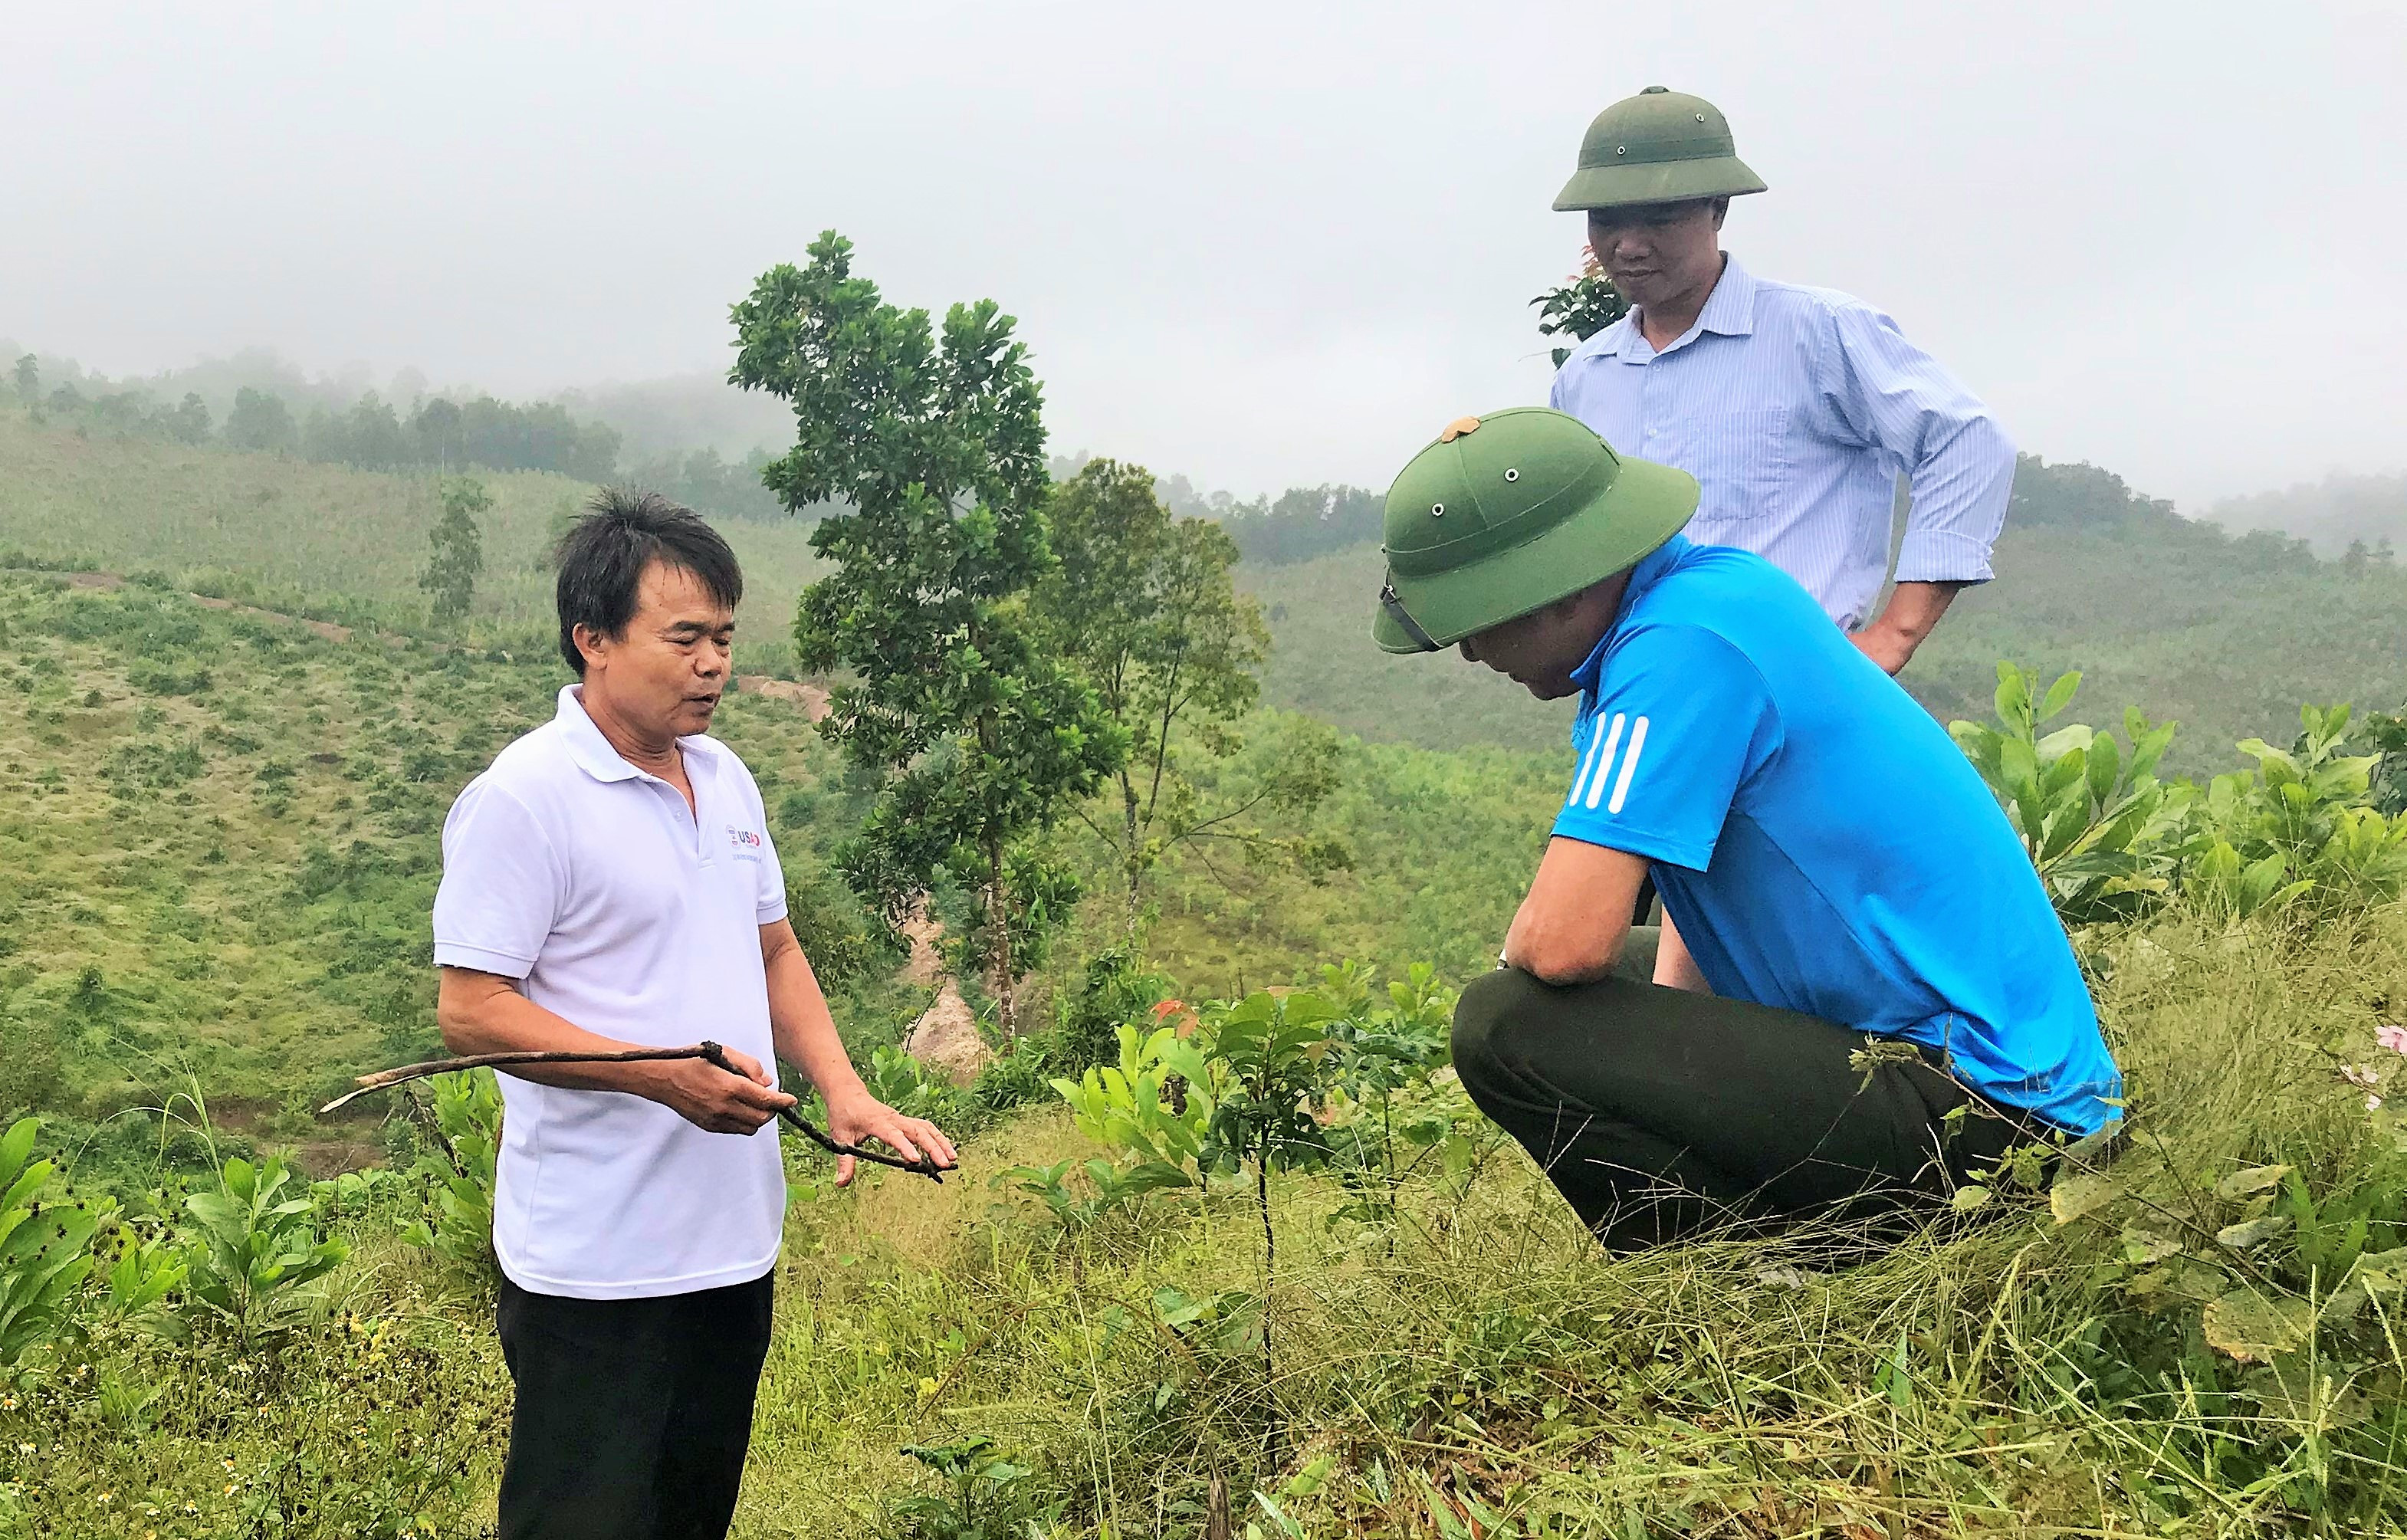 Hướng dẫn kỹ thuật chăm sóc cây trồng tại Quỳnh Lưu. Ảnh: PV.